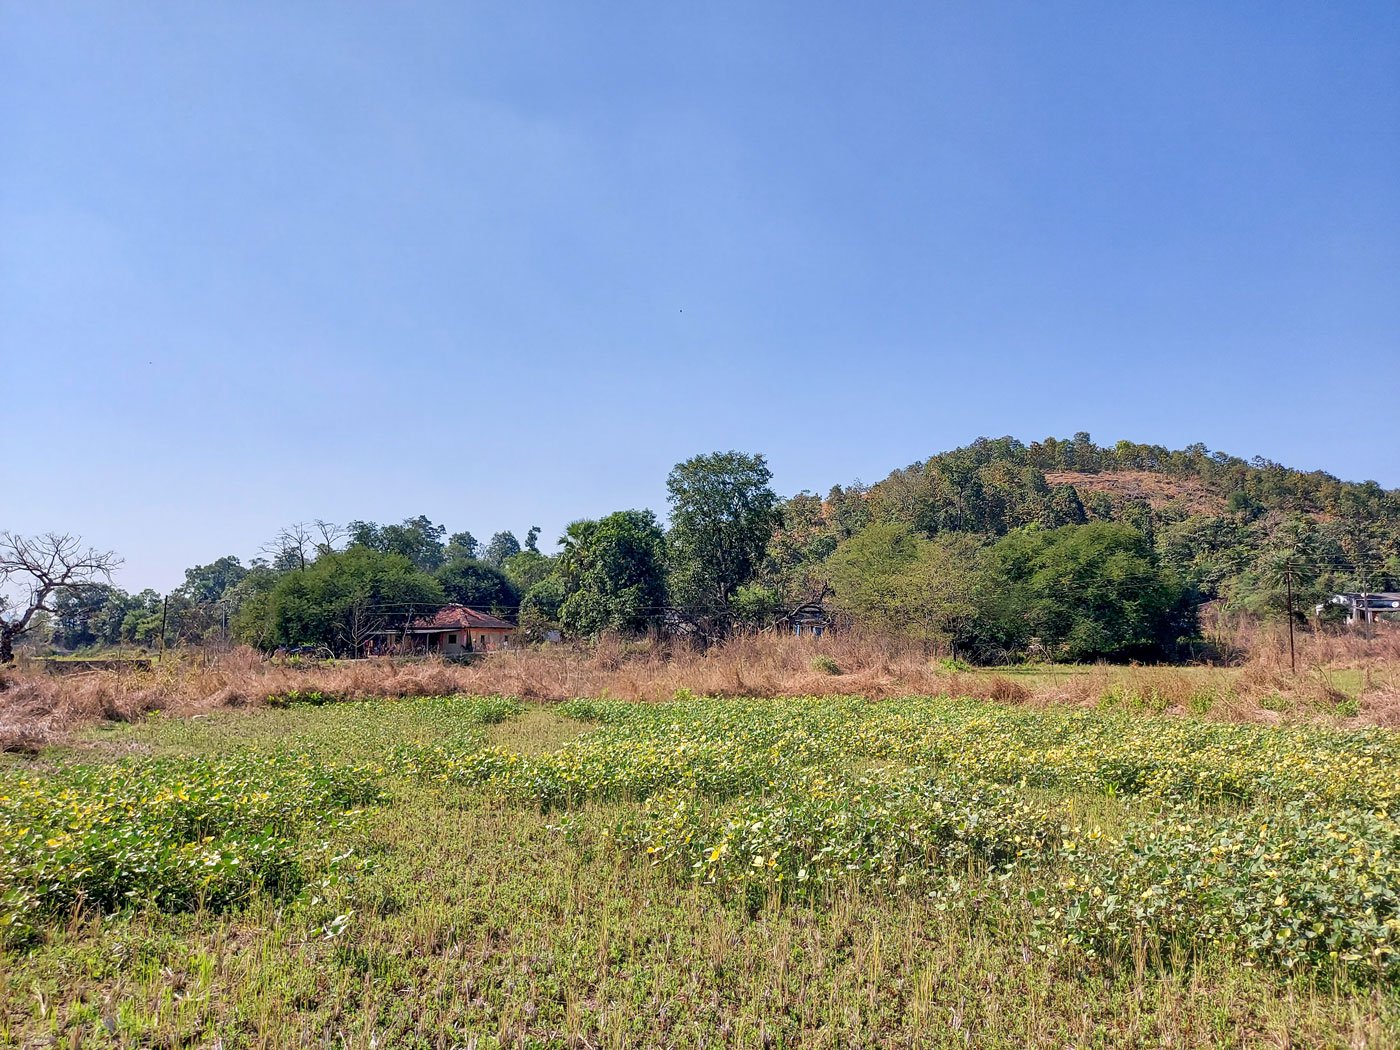 Nimbavalli village